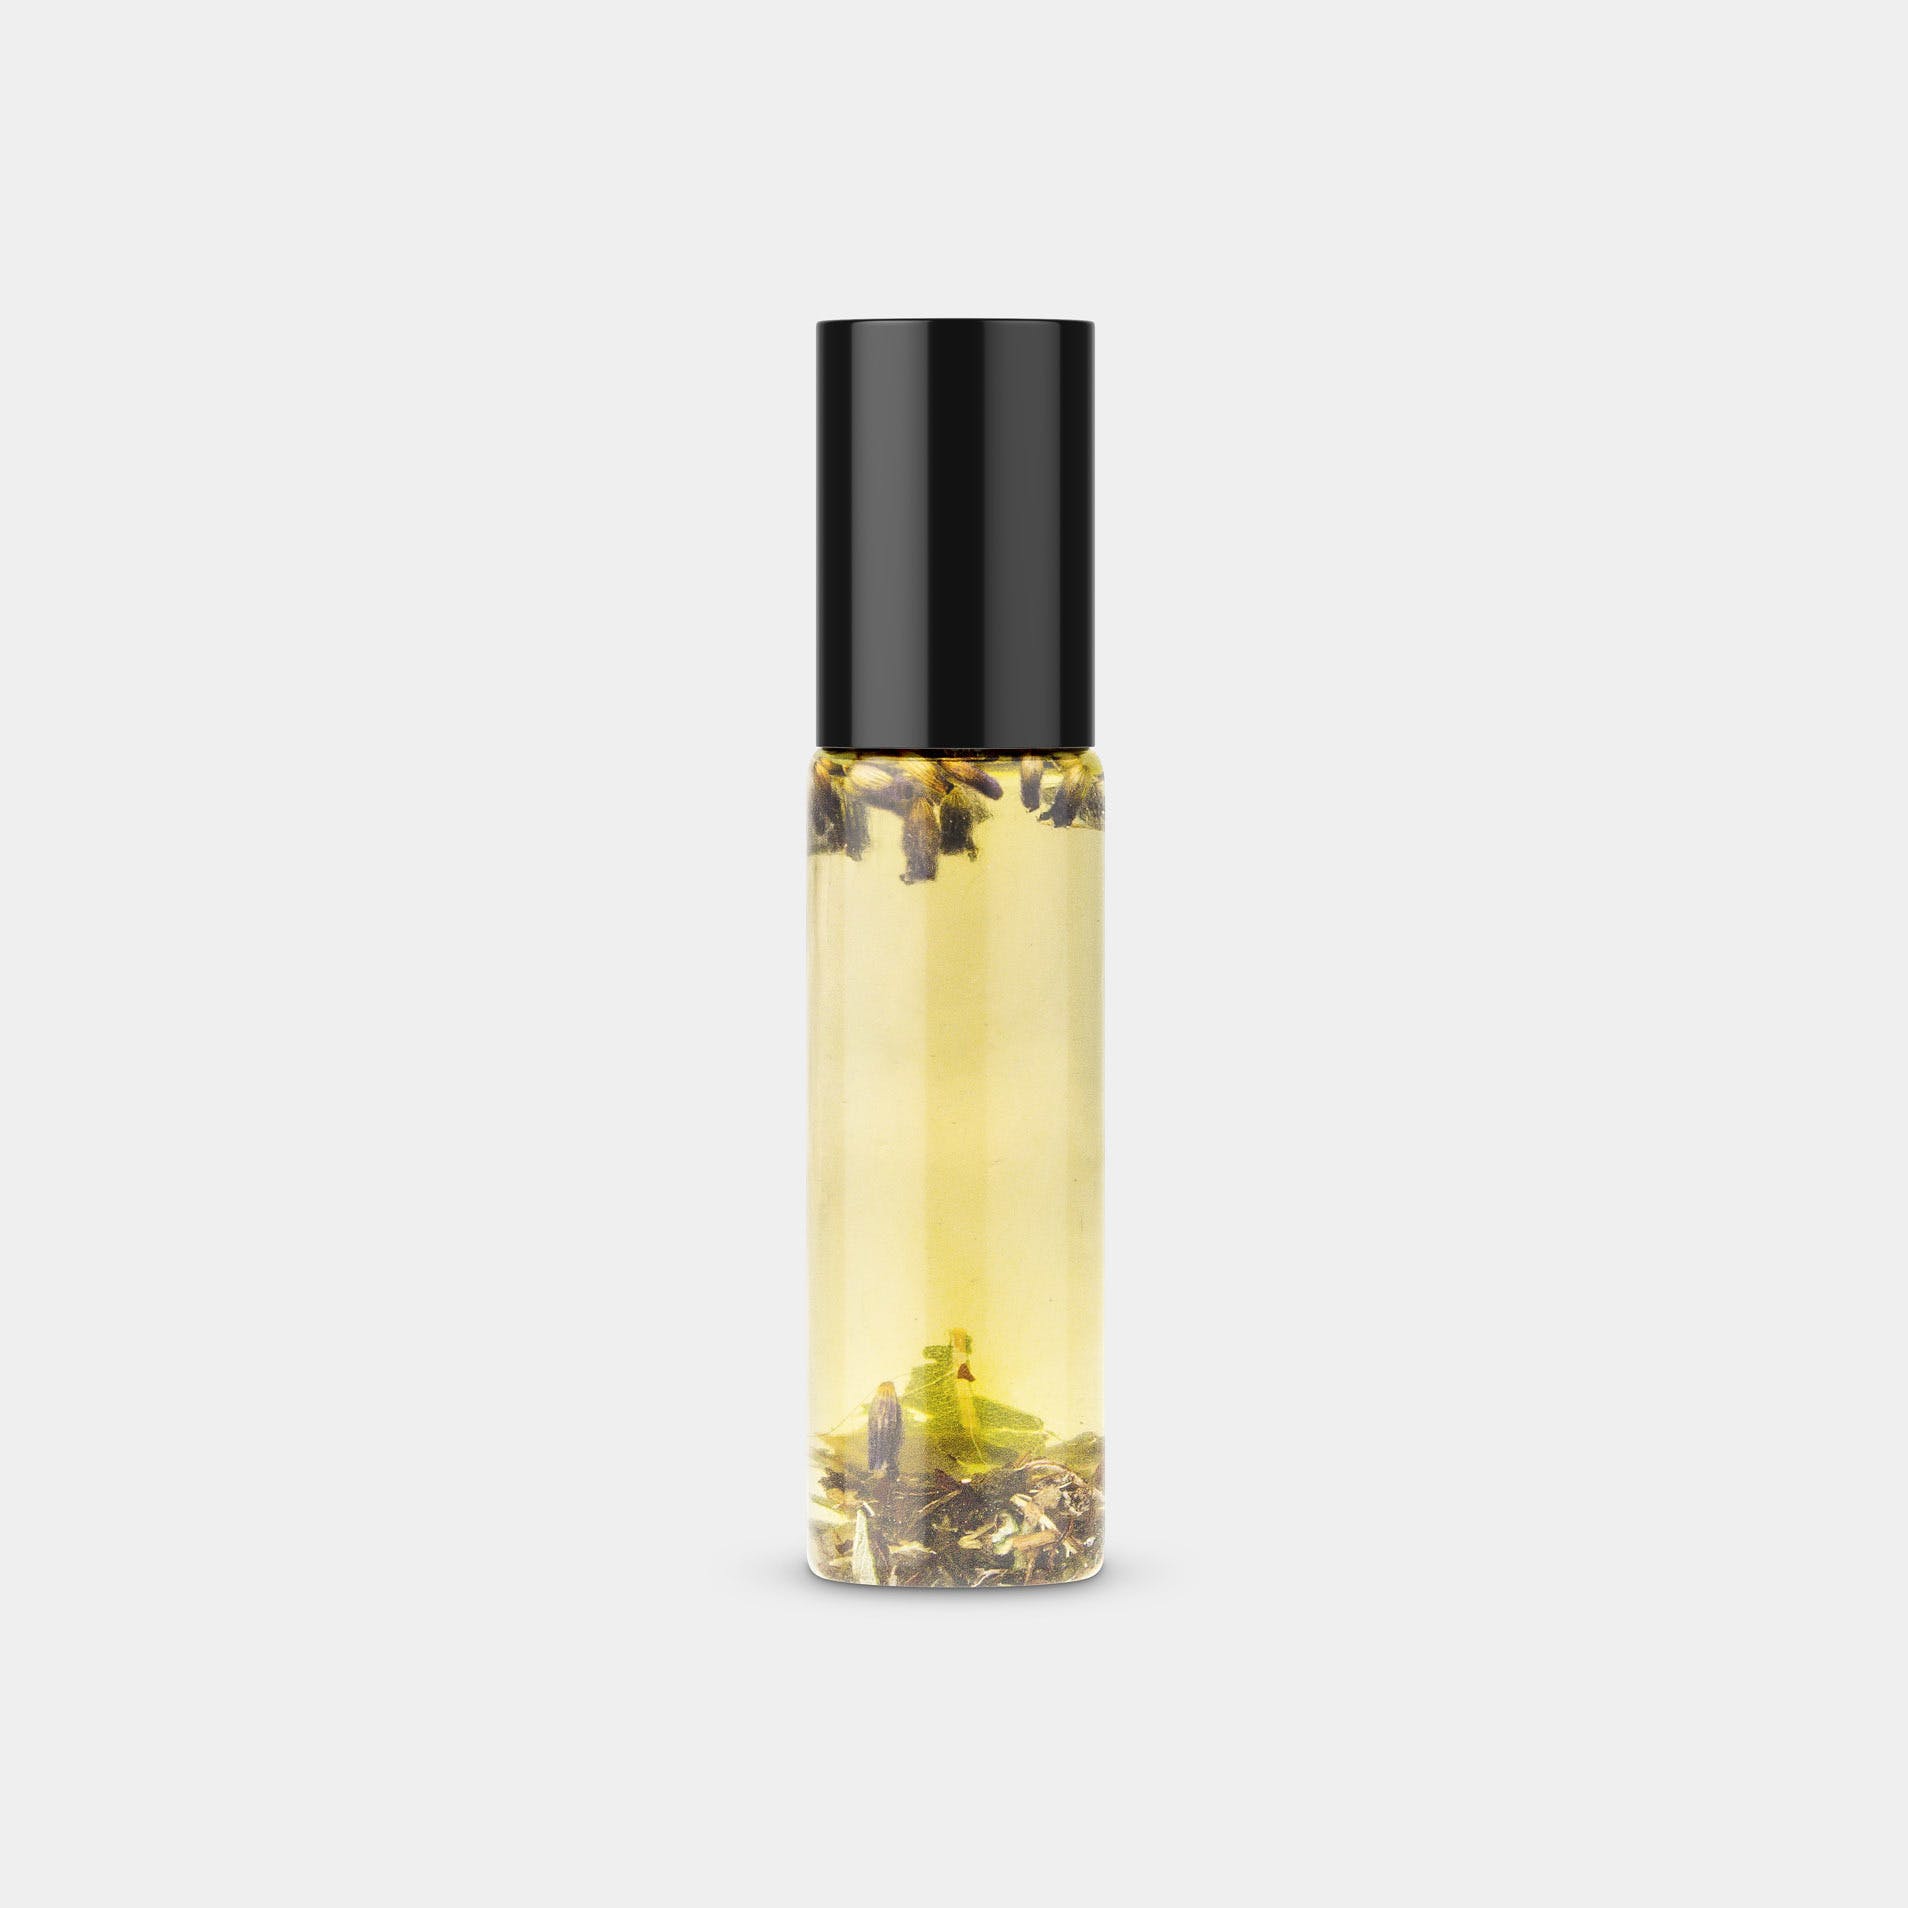 Life Flower “Headache Elixir” oil rub on